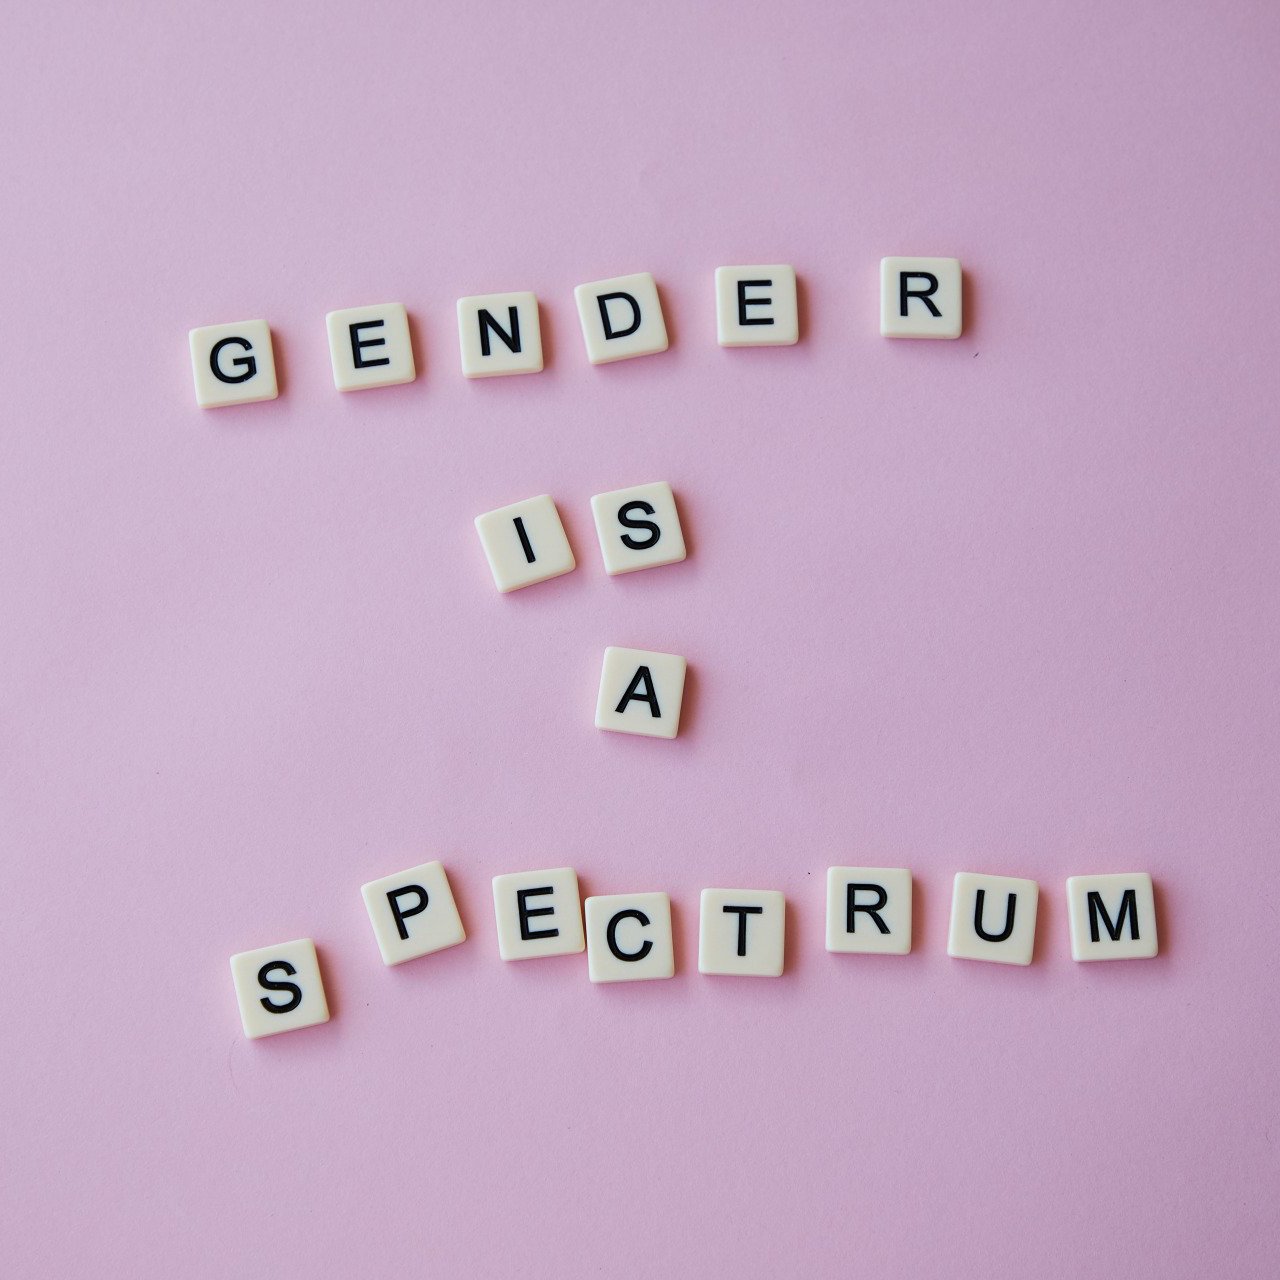 Het woord geslacht is geschreven in scrabble-letters op een roze achtergrond.